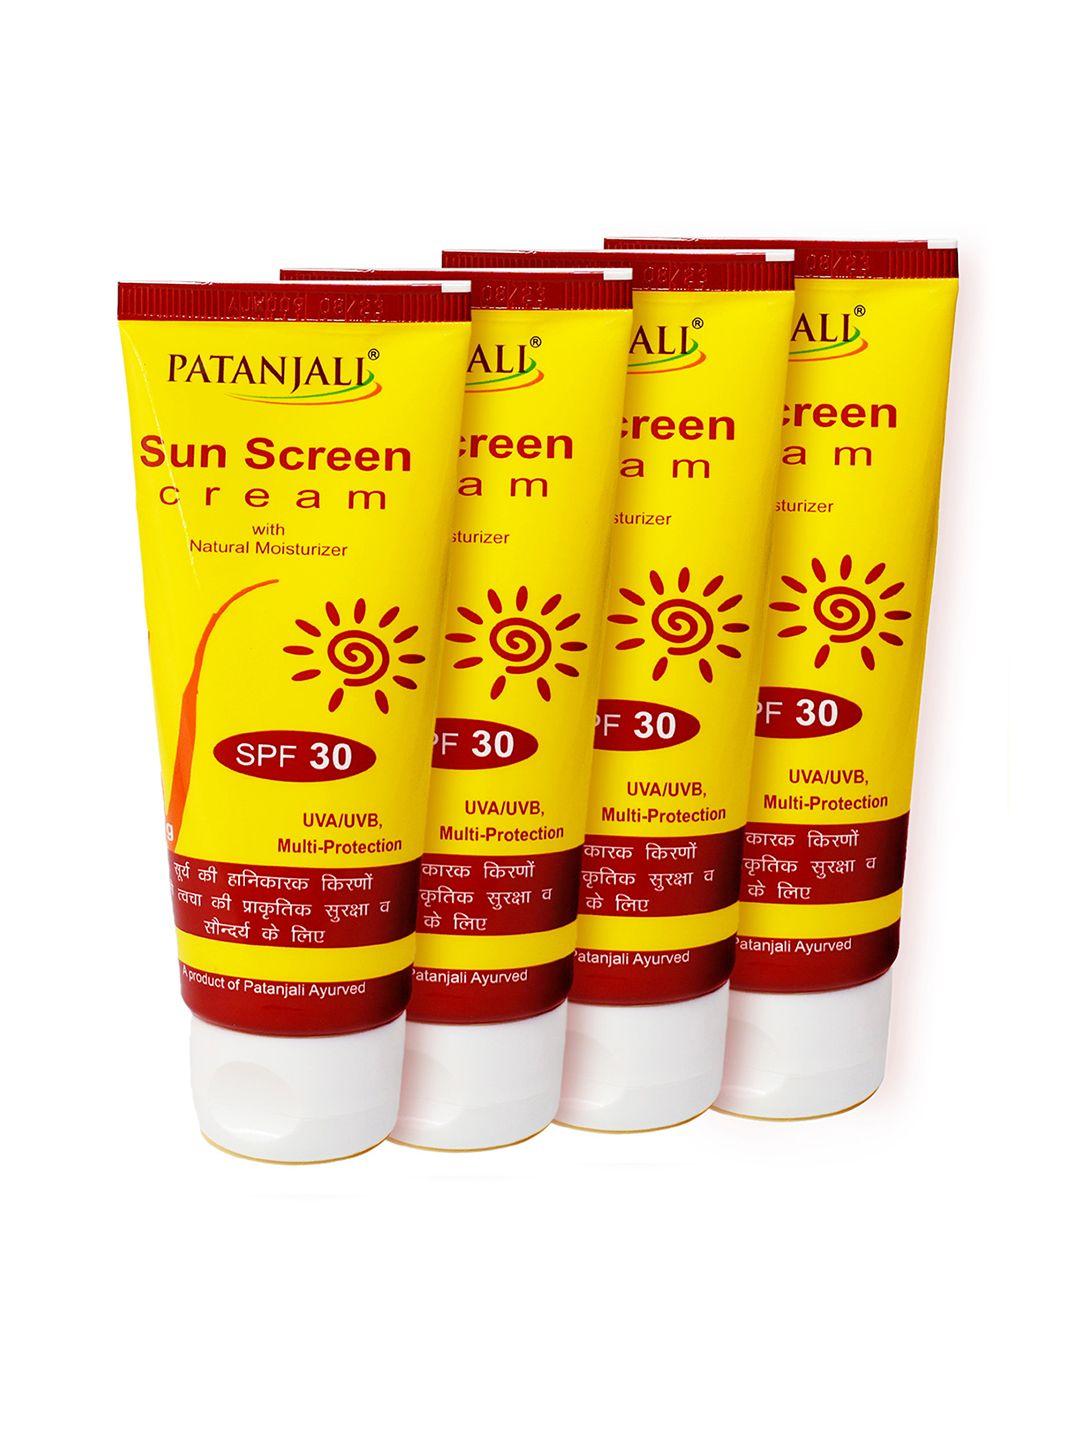 patanjali set of 4 spf 30 sun screen cream with natural moisturiser - 50 g each